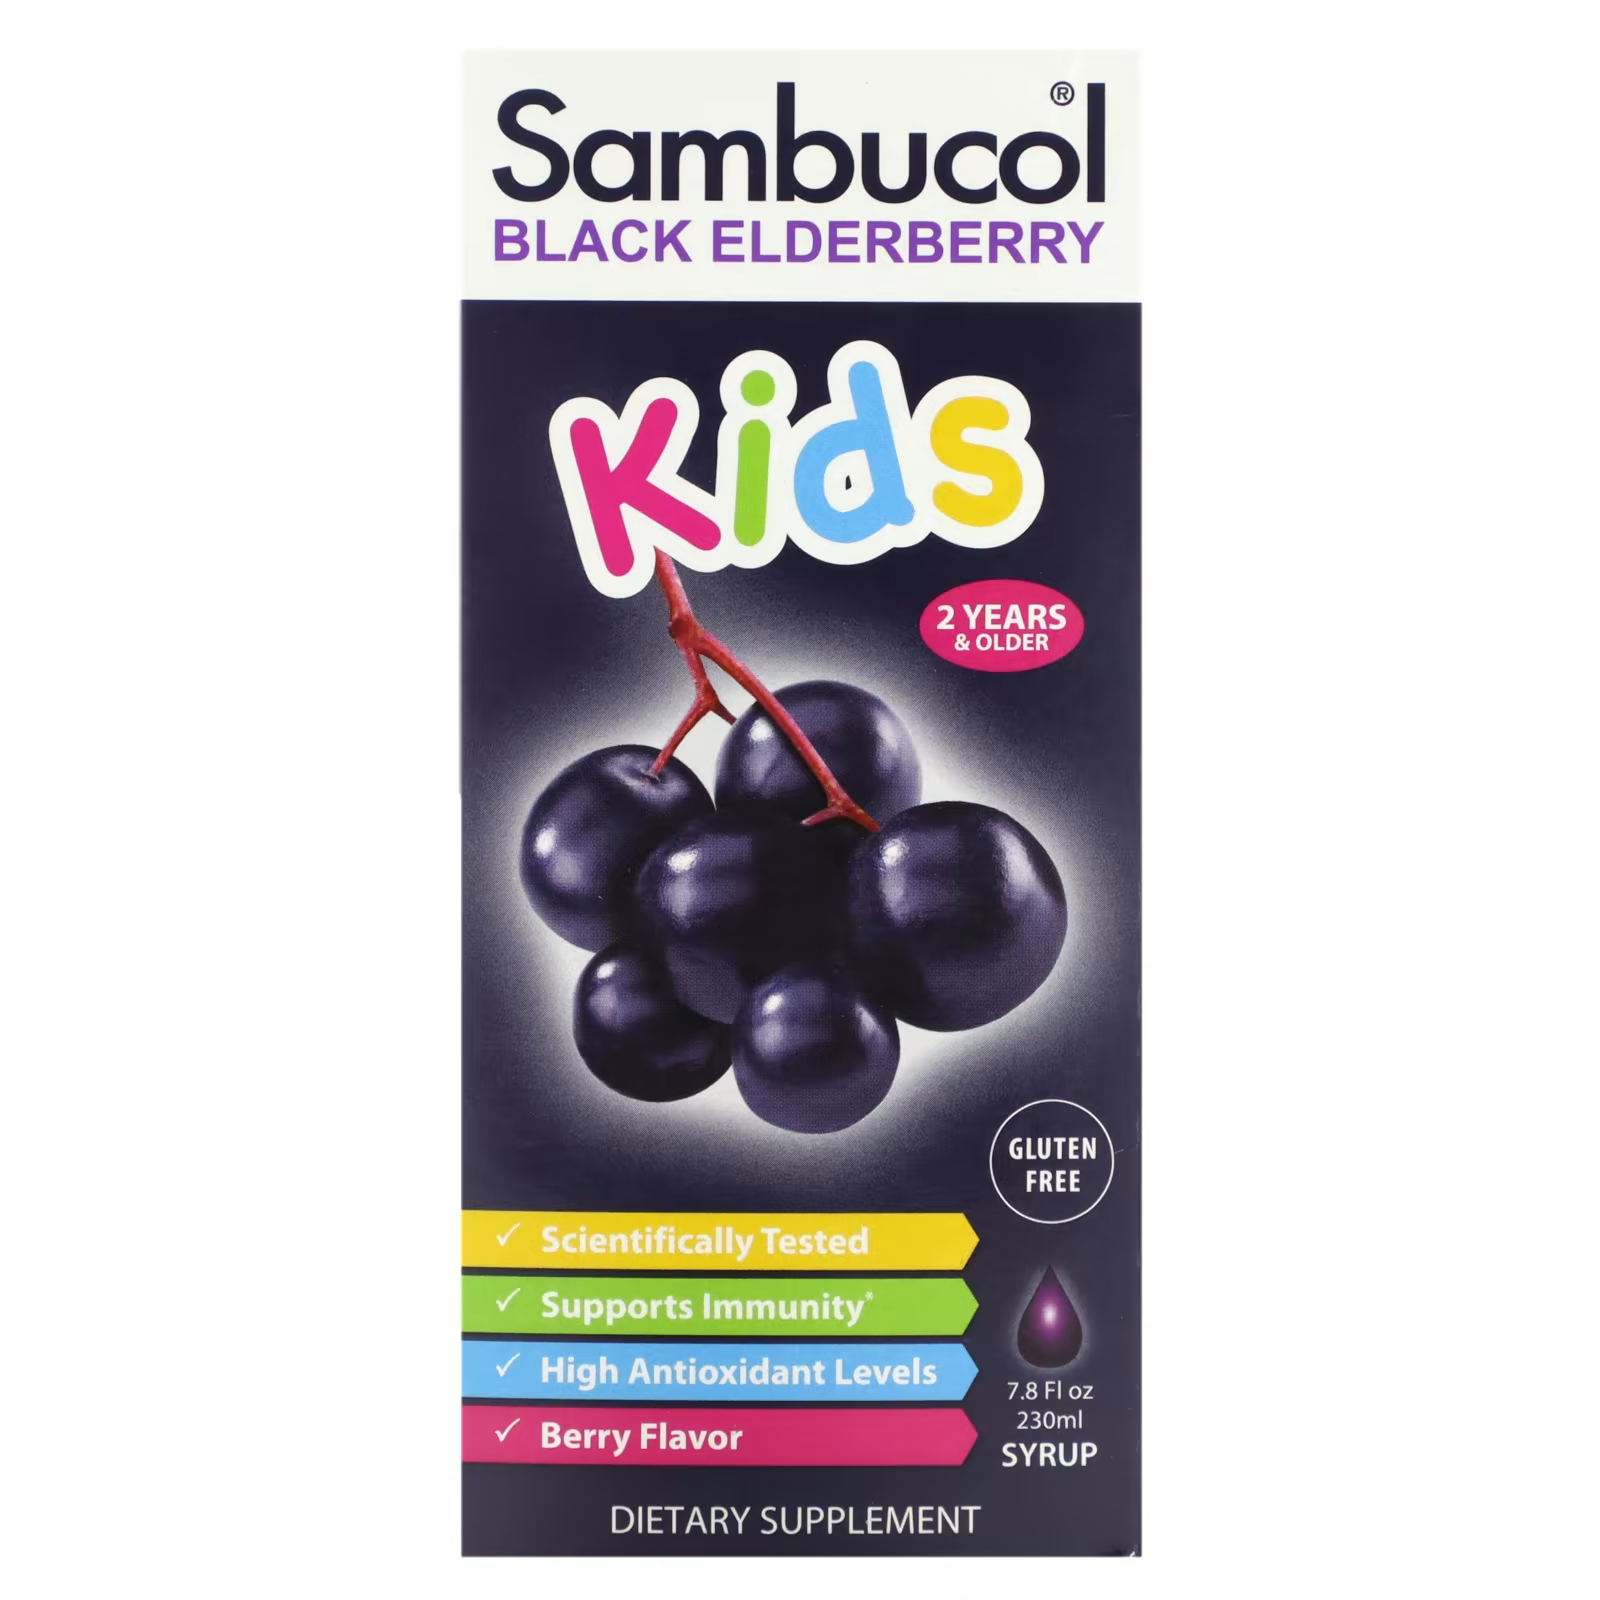 Сироп из черной бузины Sambucol Kids для детей от 2 лет и старше, 230 мл сироп для детей с черной бузиной с витамином с sambucol black elderberry kids 120мл для иммунитета от гриппа и простуды